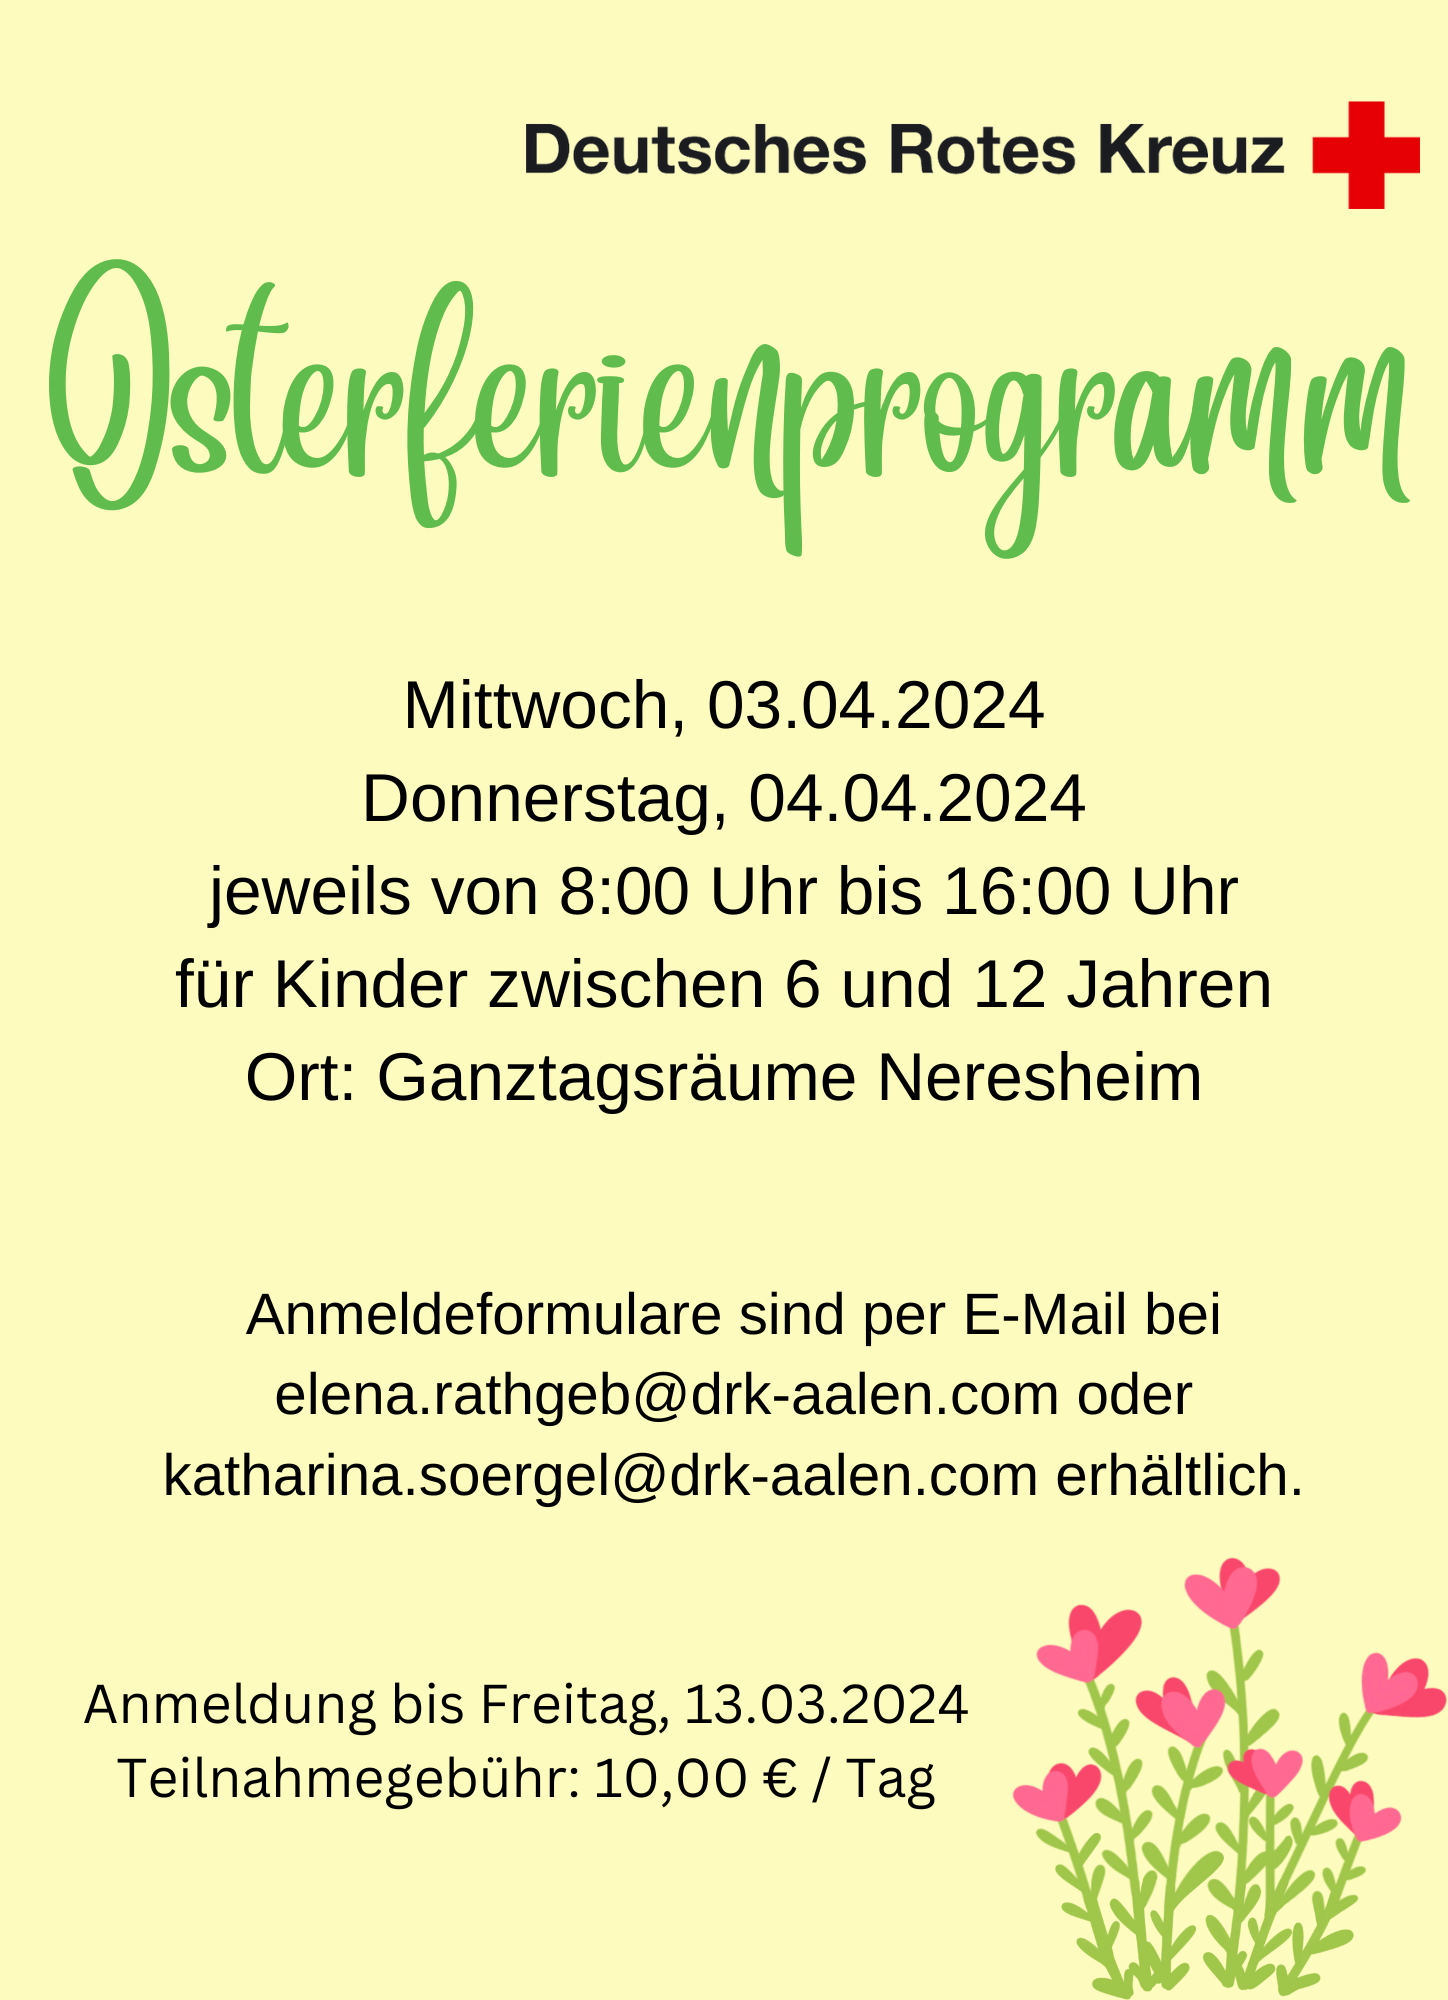 Osterferienprogramm in Neresheim DRK Aalen